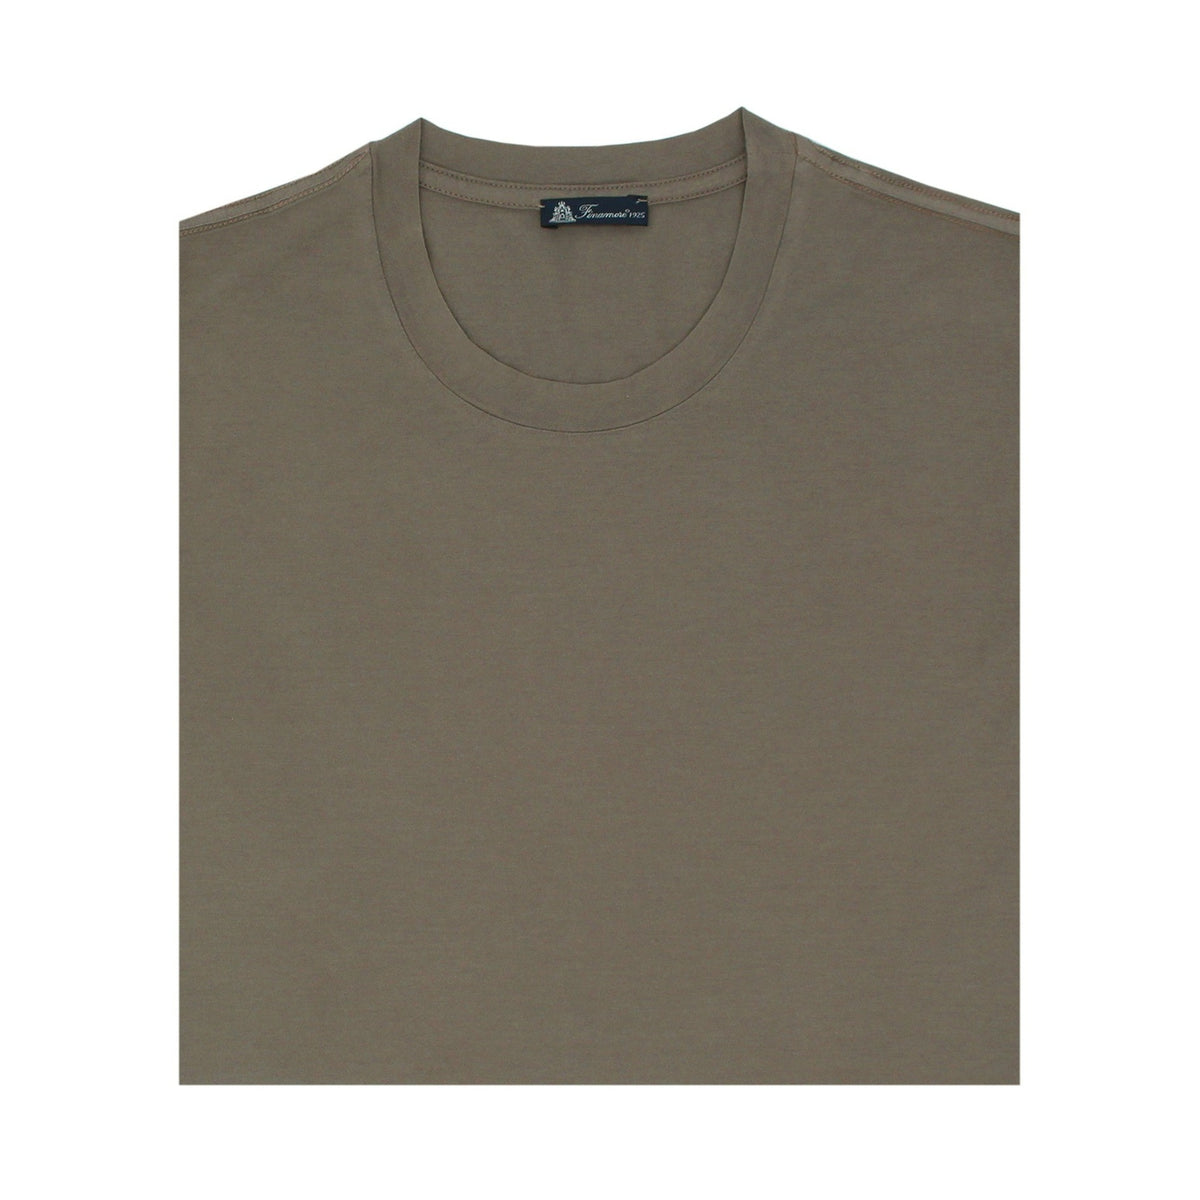 T-shirt colore fango in cotone Supima tinto in capo